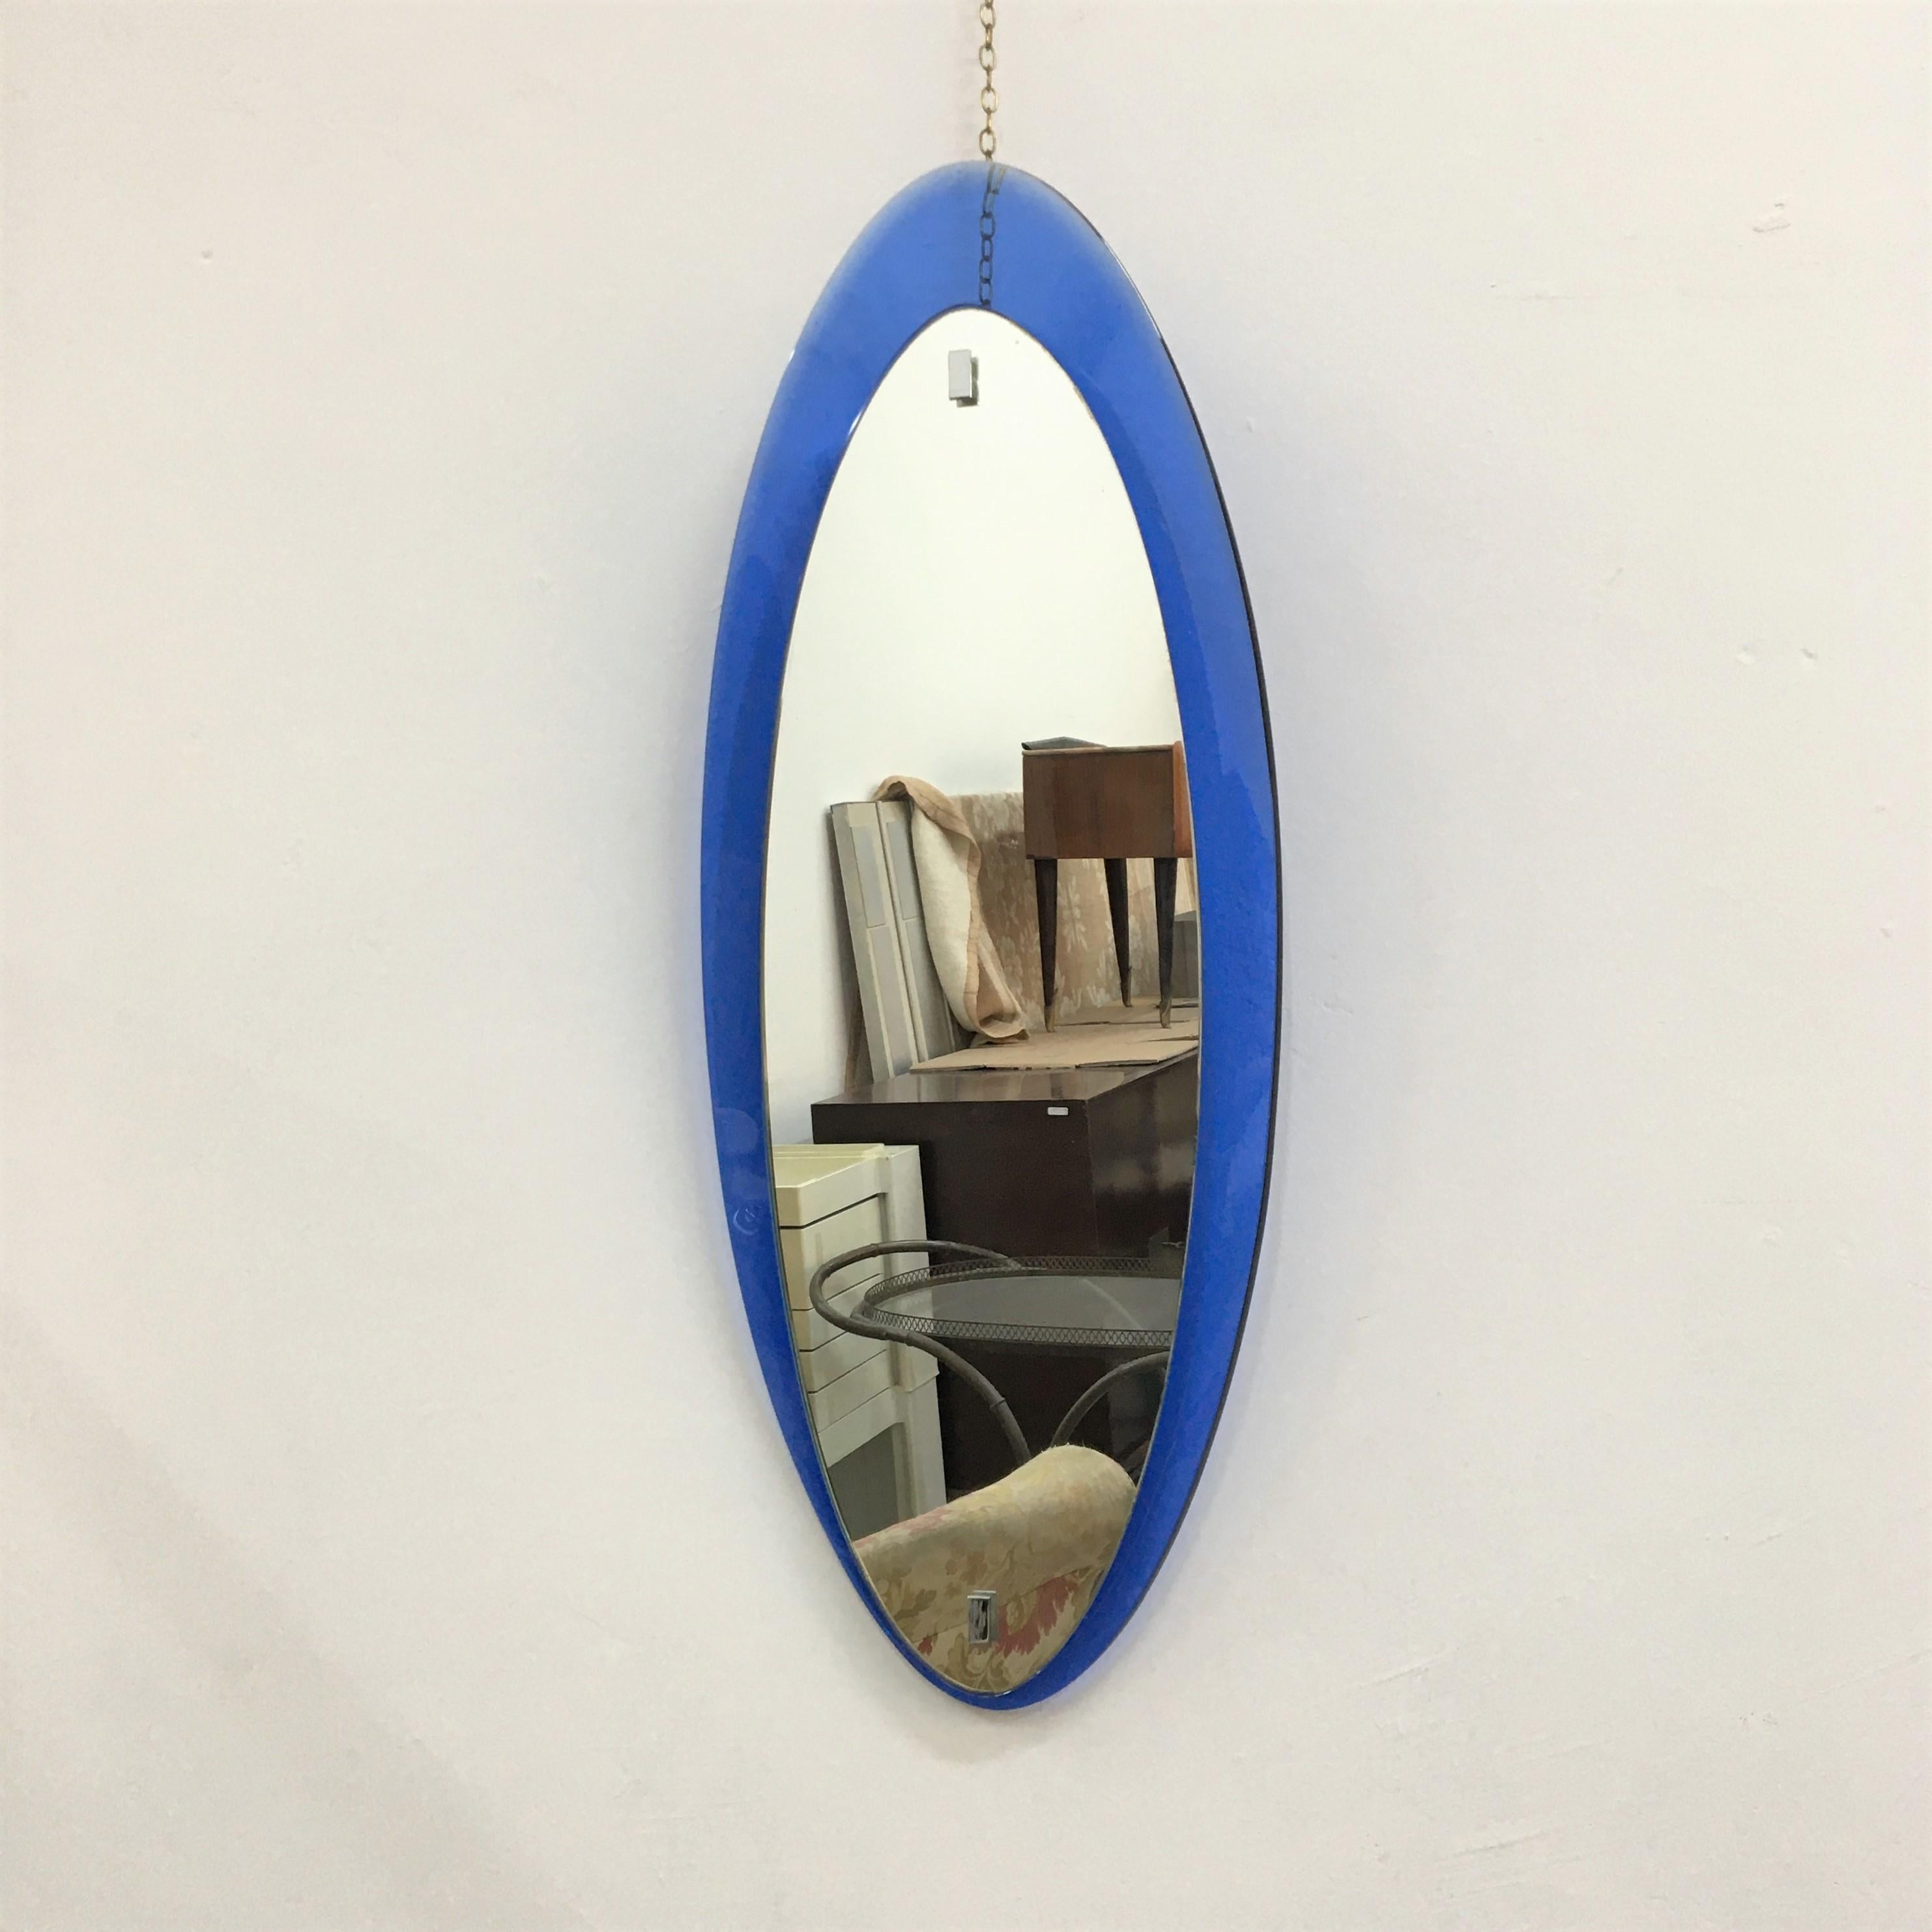 Magnifique miroir dans le style Fontana Arte, années 1960. Il a une forme ovale étroite très particulière avec un cadre bleu fontana.
Usure conforme à l'âge et à l'usage.